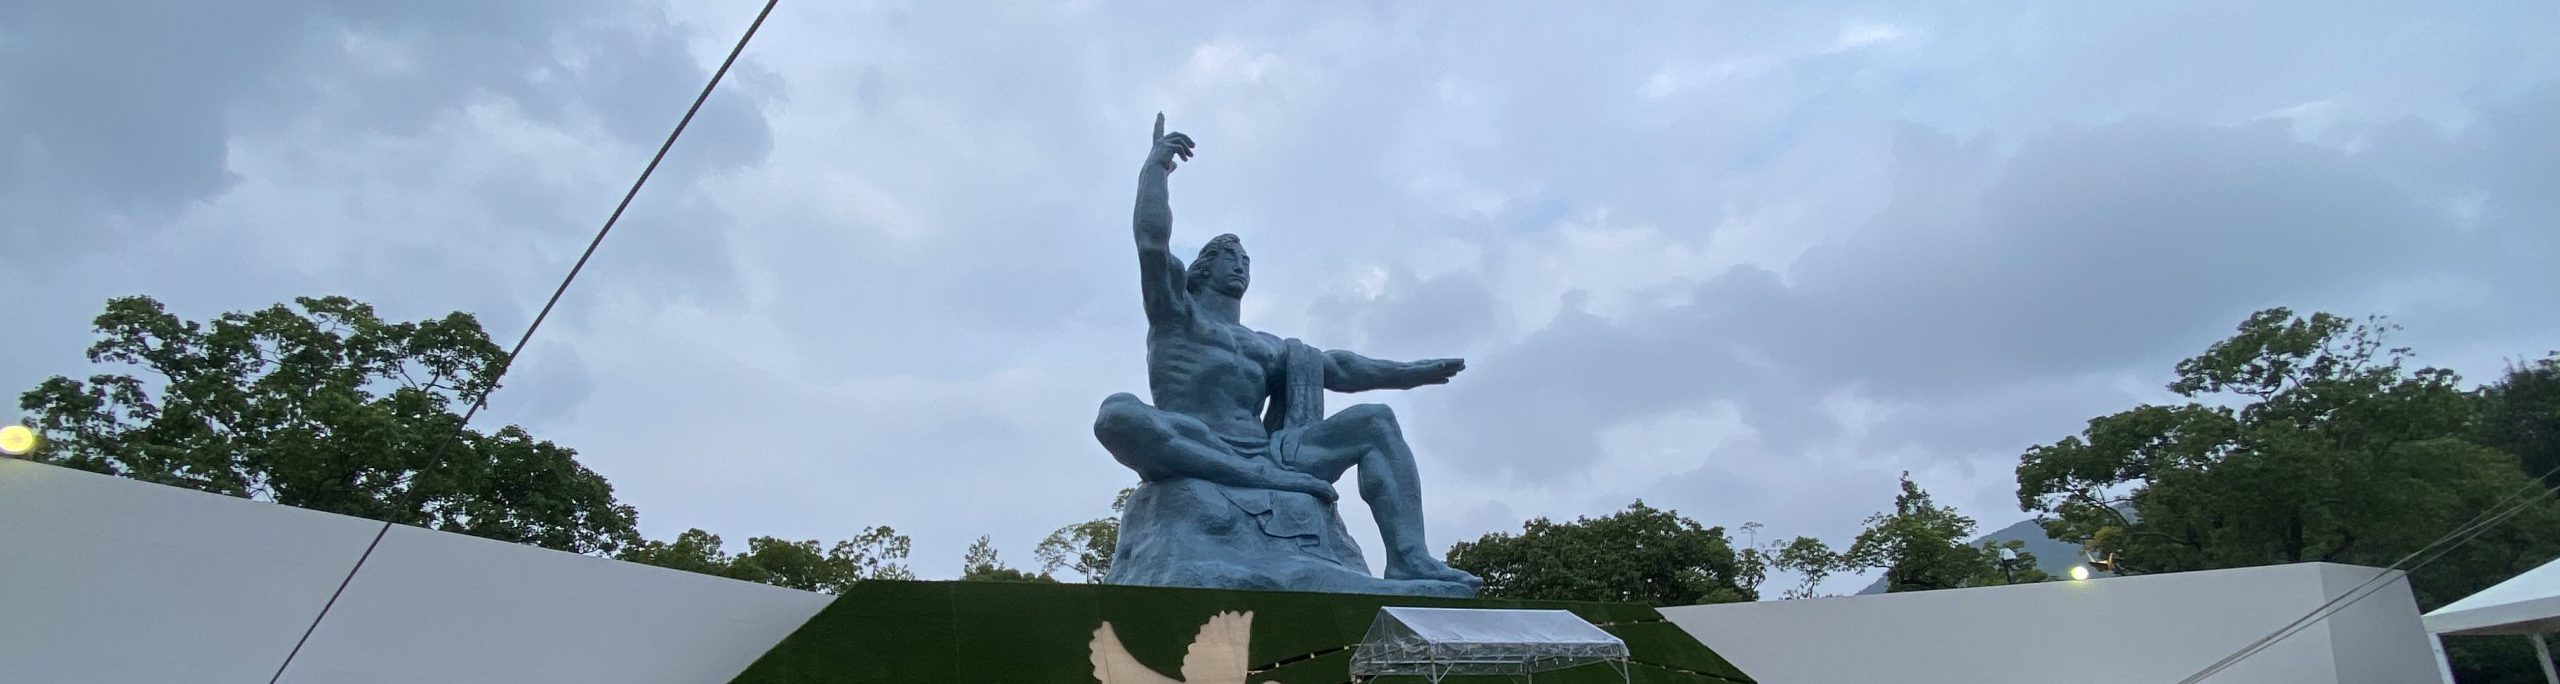 Parque conmemorativo de la paz